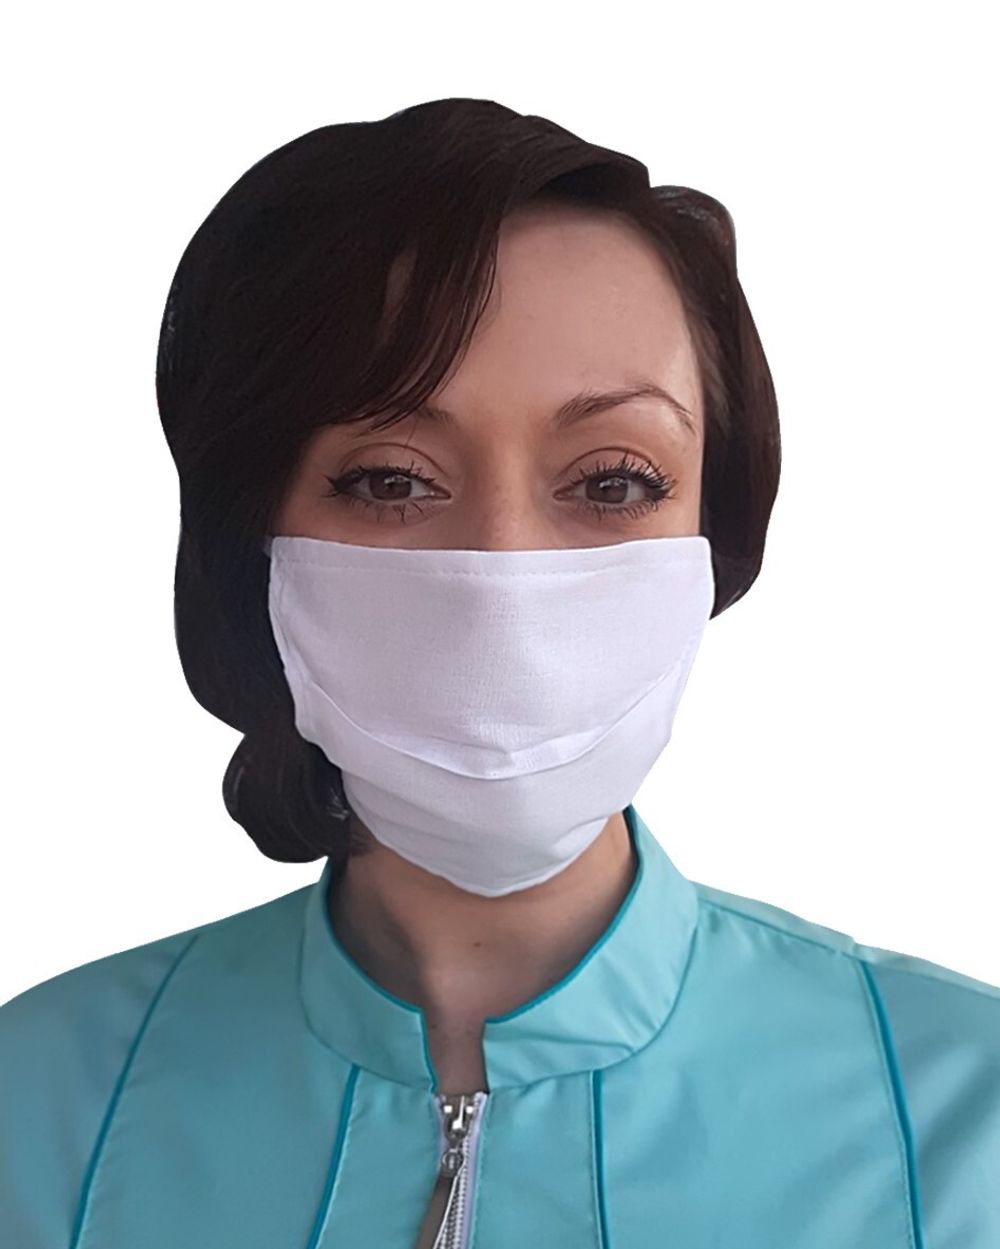 Маска марлевая противогазовая. Марлевая маска для лица. Медицинская маска с кляпом. Марлевая хирургическая маска. Защита марлевой маски